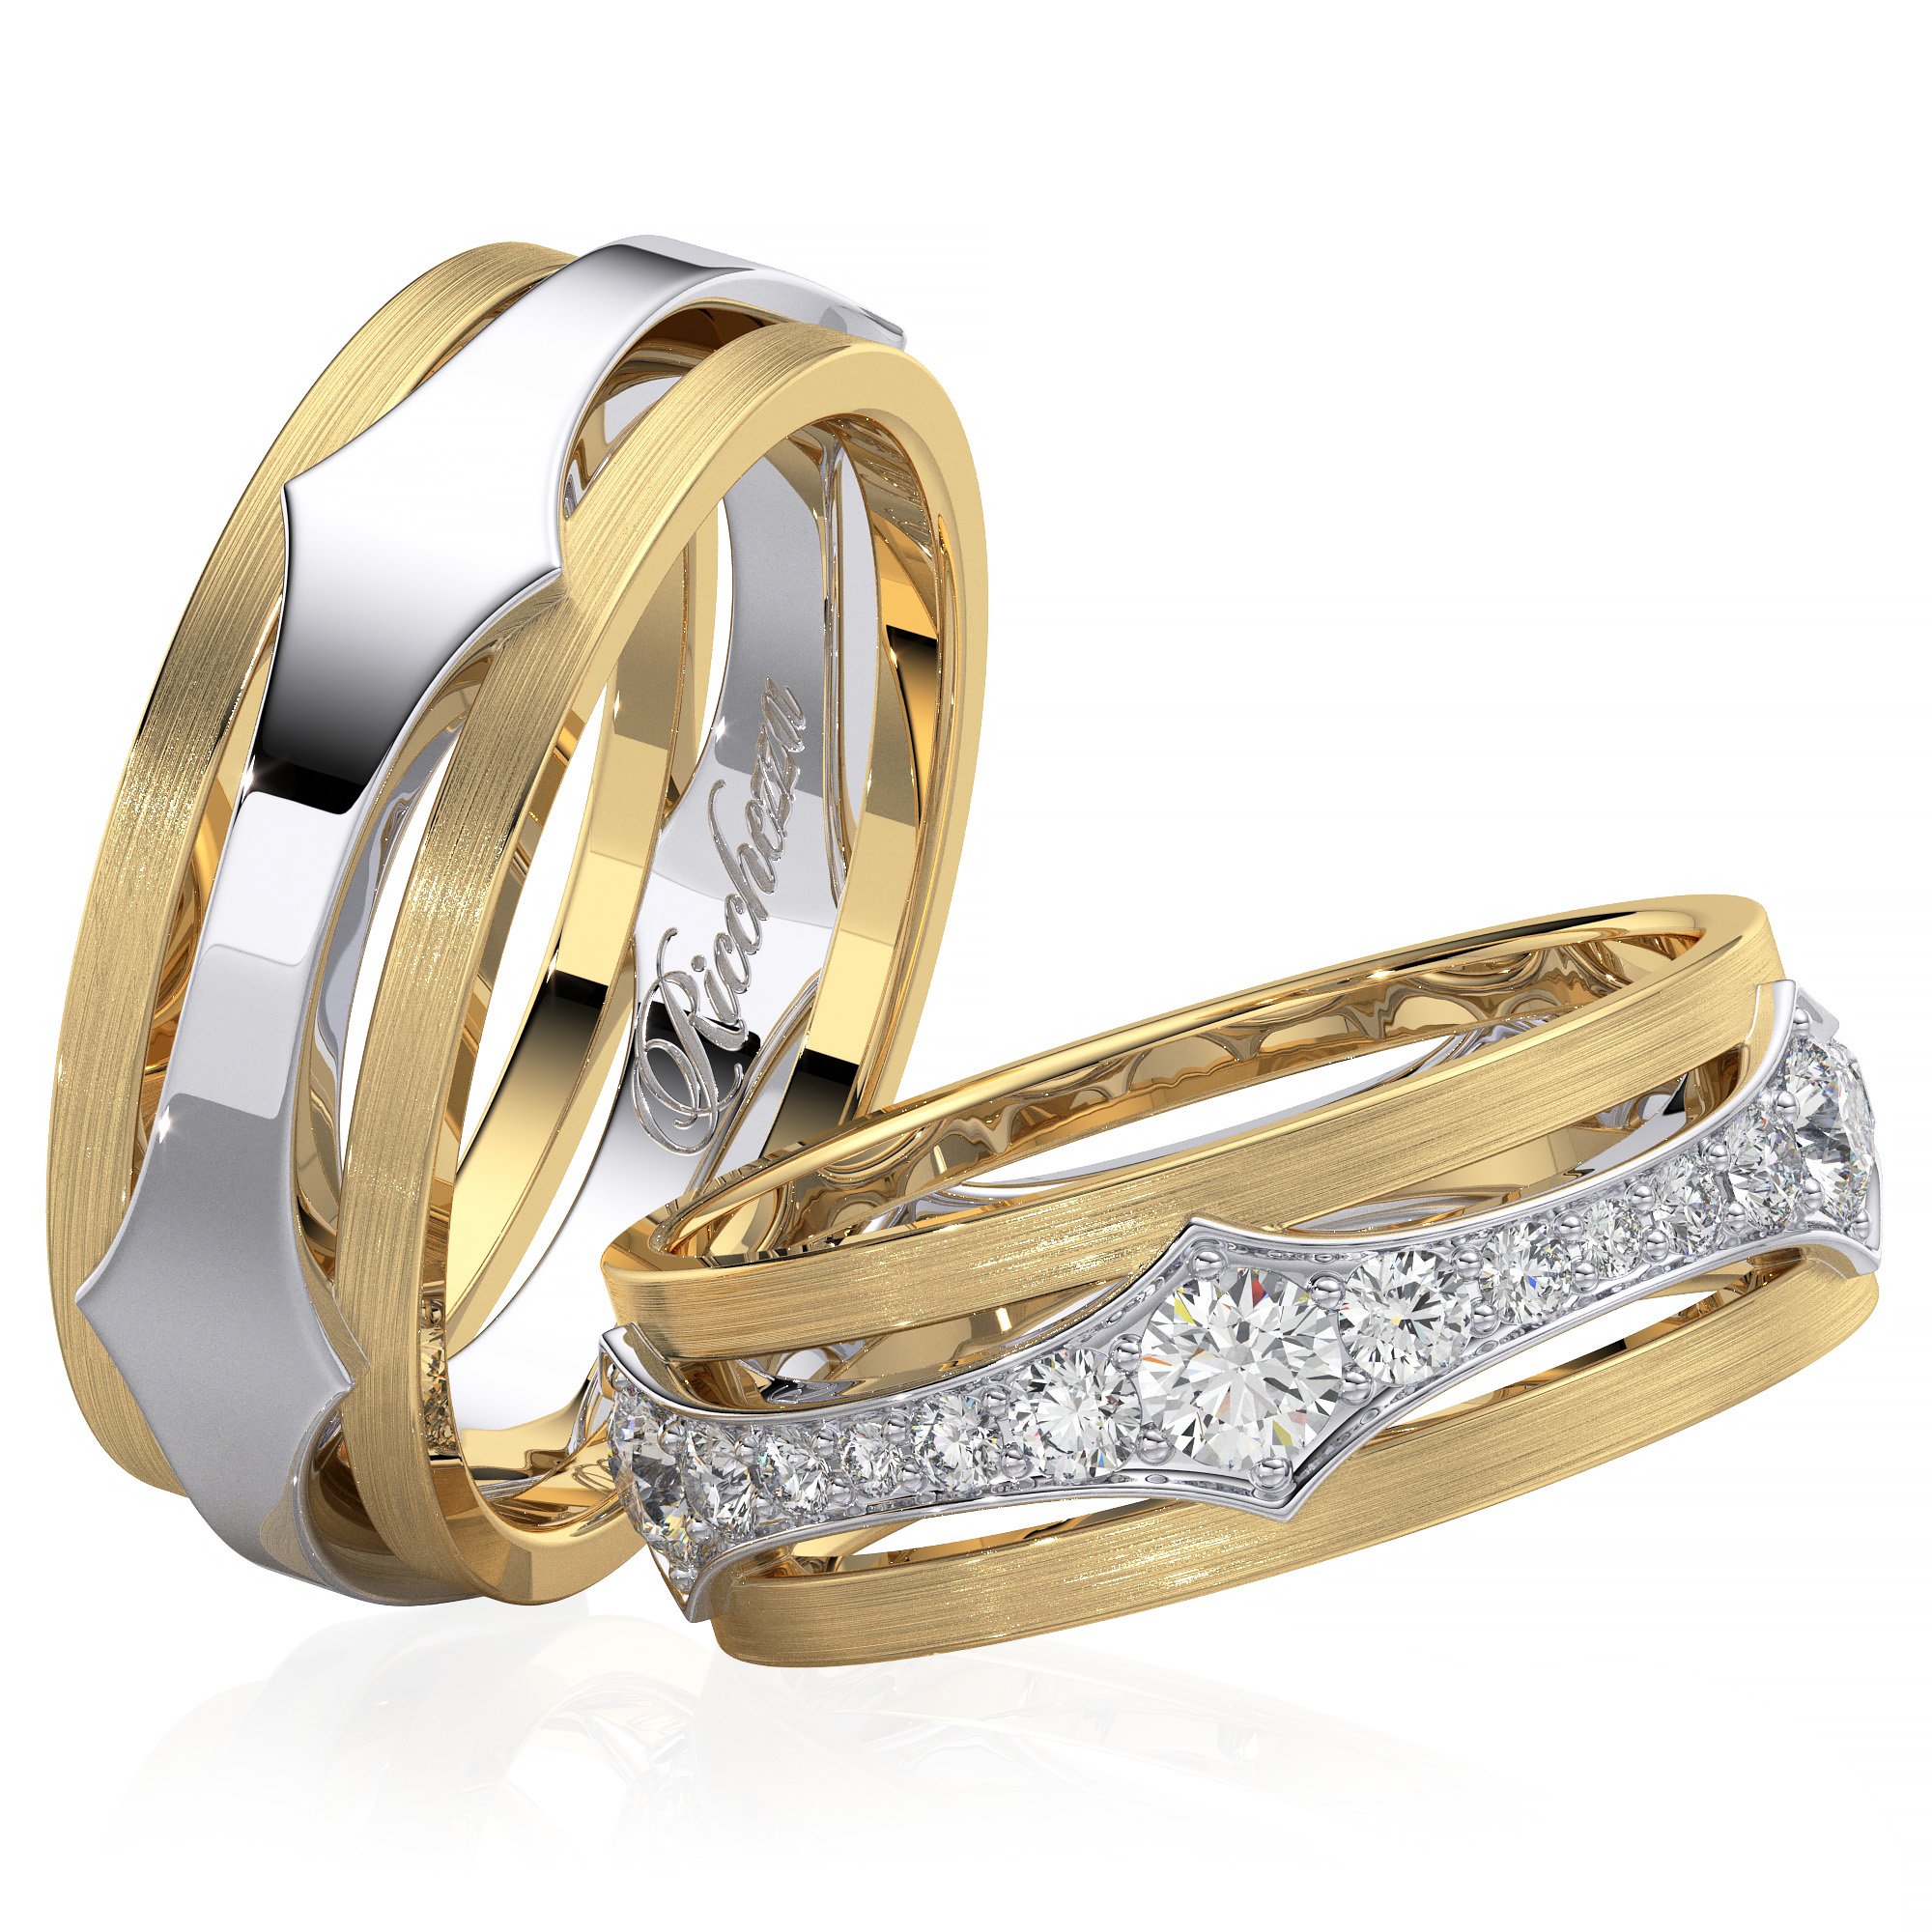 Обручальные кольца золотые на свадьбу. Санлайт обручальные кольца парные. Бронницкий ювелир обручальные кольца. Обручальные кольца парные золотые Санлайт. Бронницкий ювелир обручальные кольца с бриллиантами.